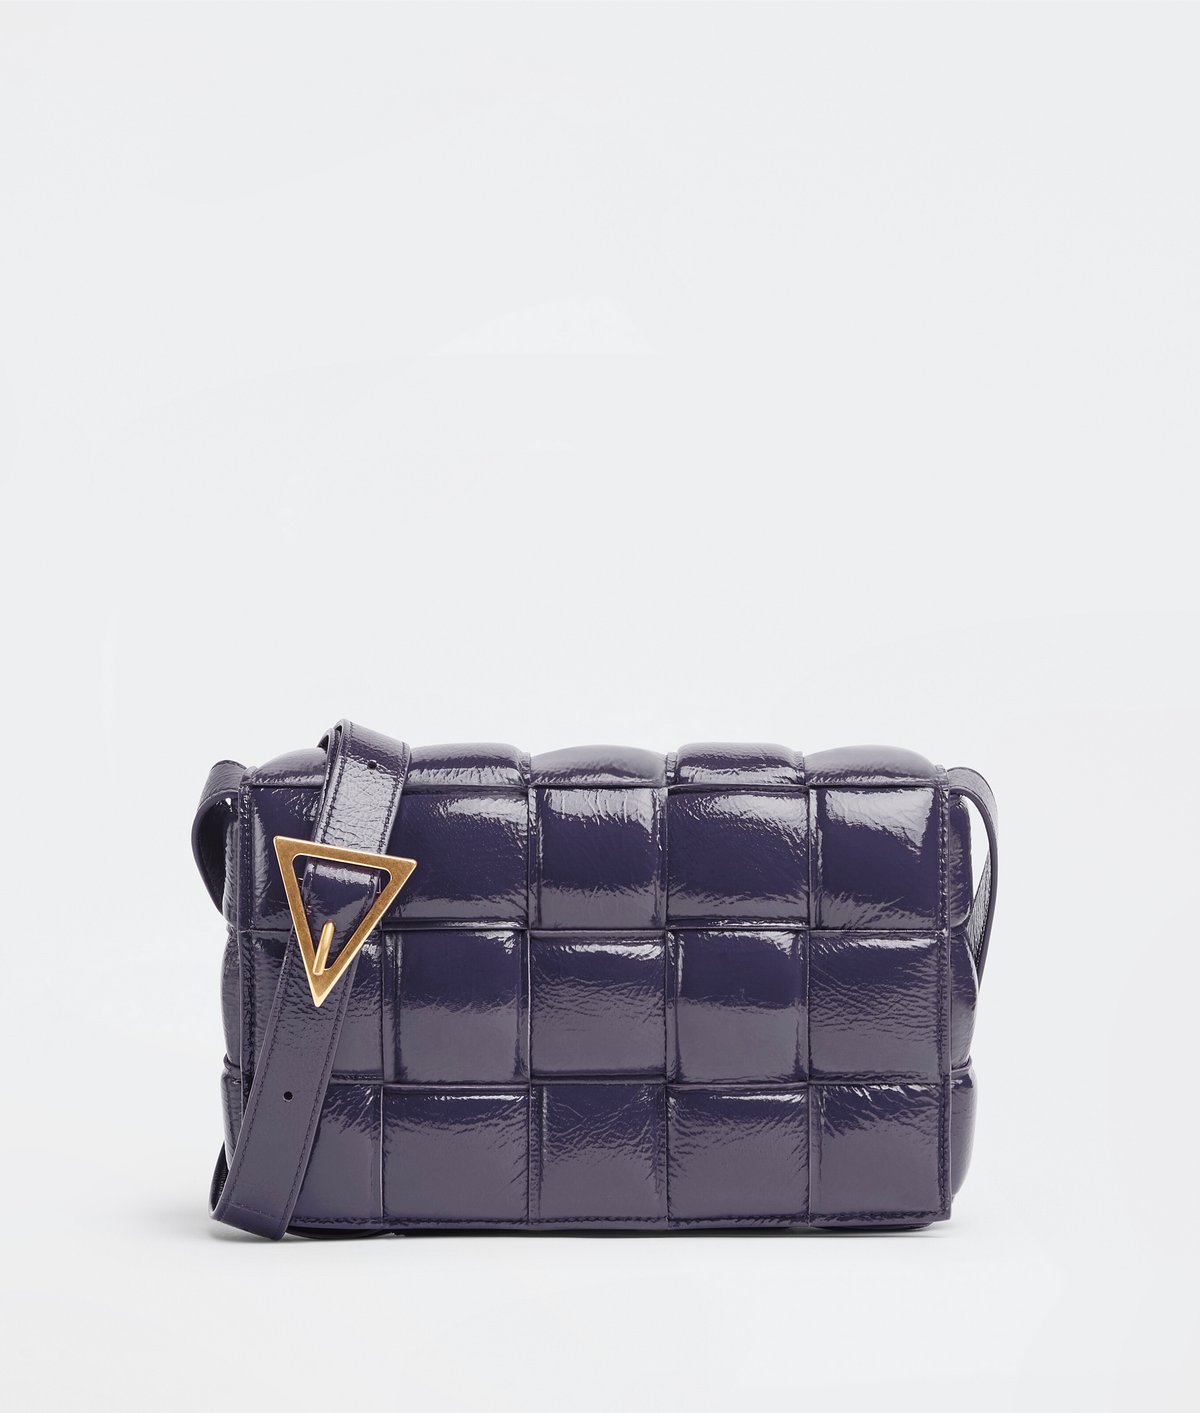 ボッテガ・ヴェネタのバッグ「パデッド カセット」に新色登場、鮮やか